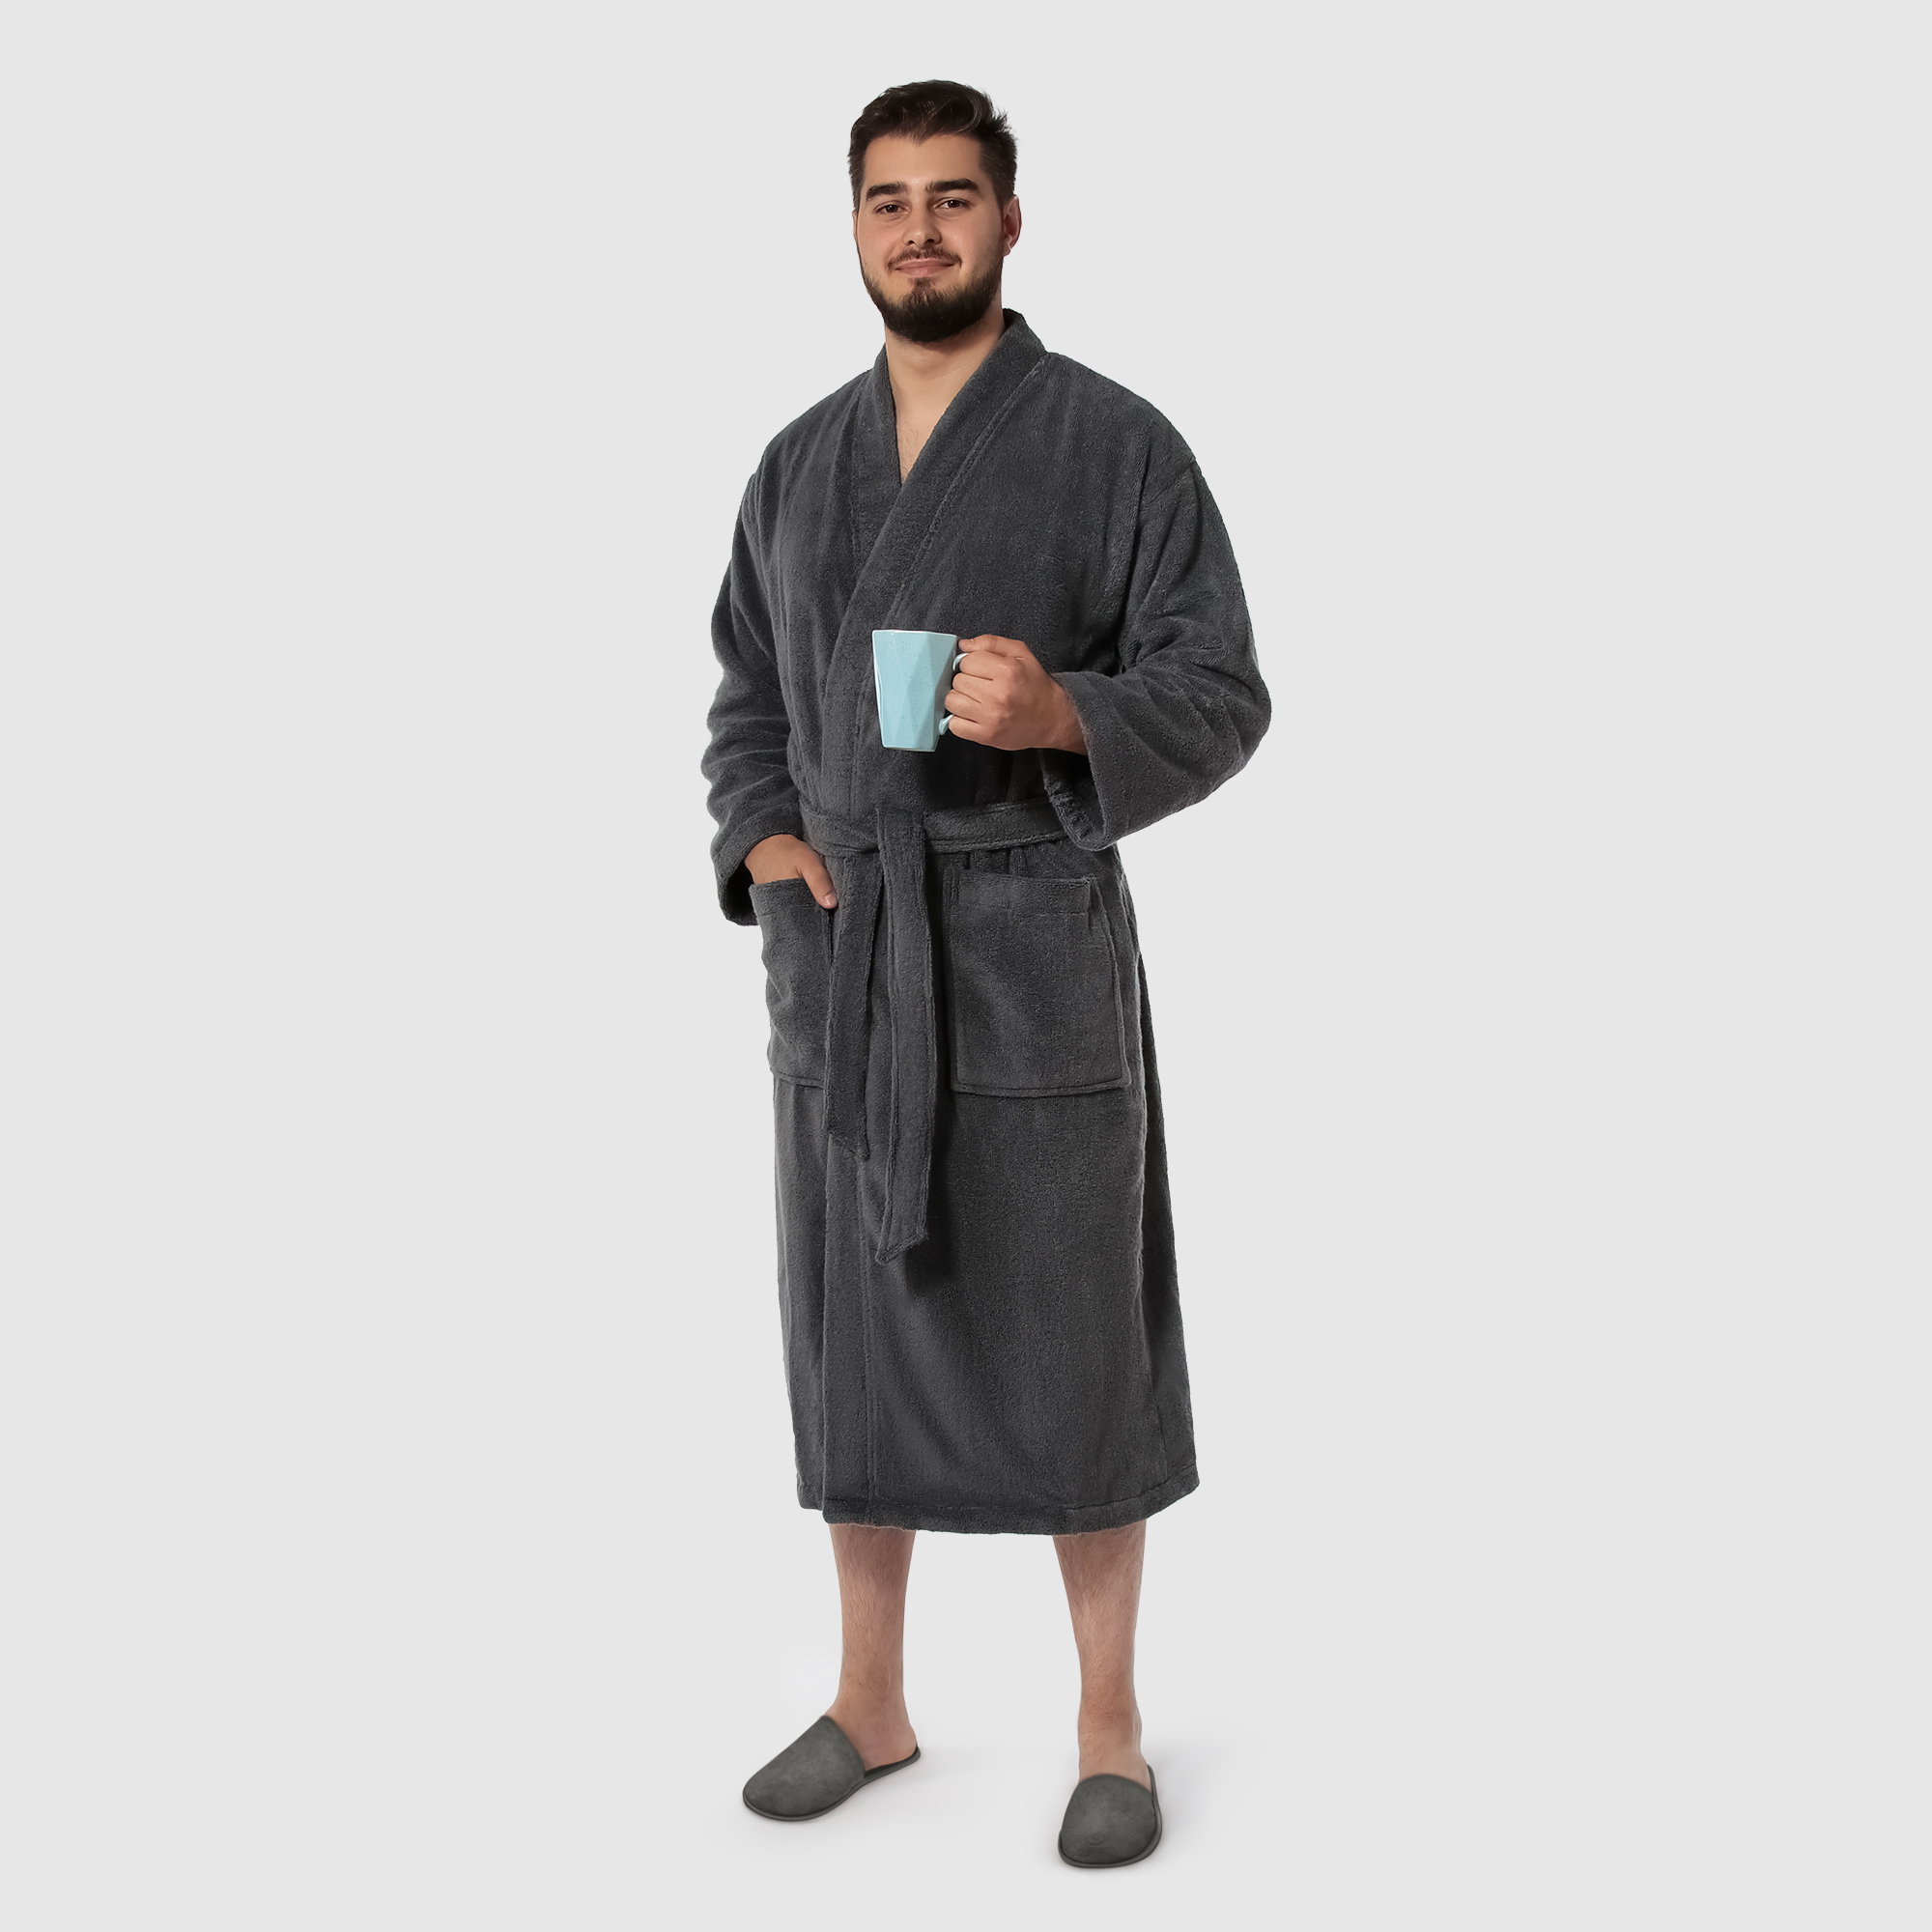 Мужской халат Maisonette Parla тёмно-серый L халат мужской asil sauna brown xxl вафельный с капюшоном